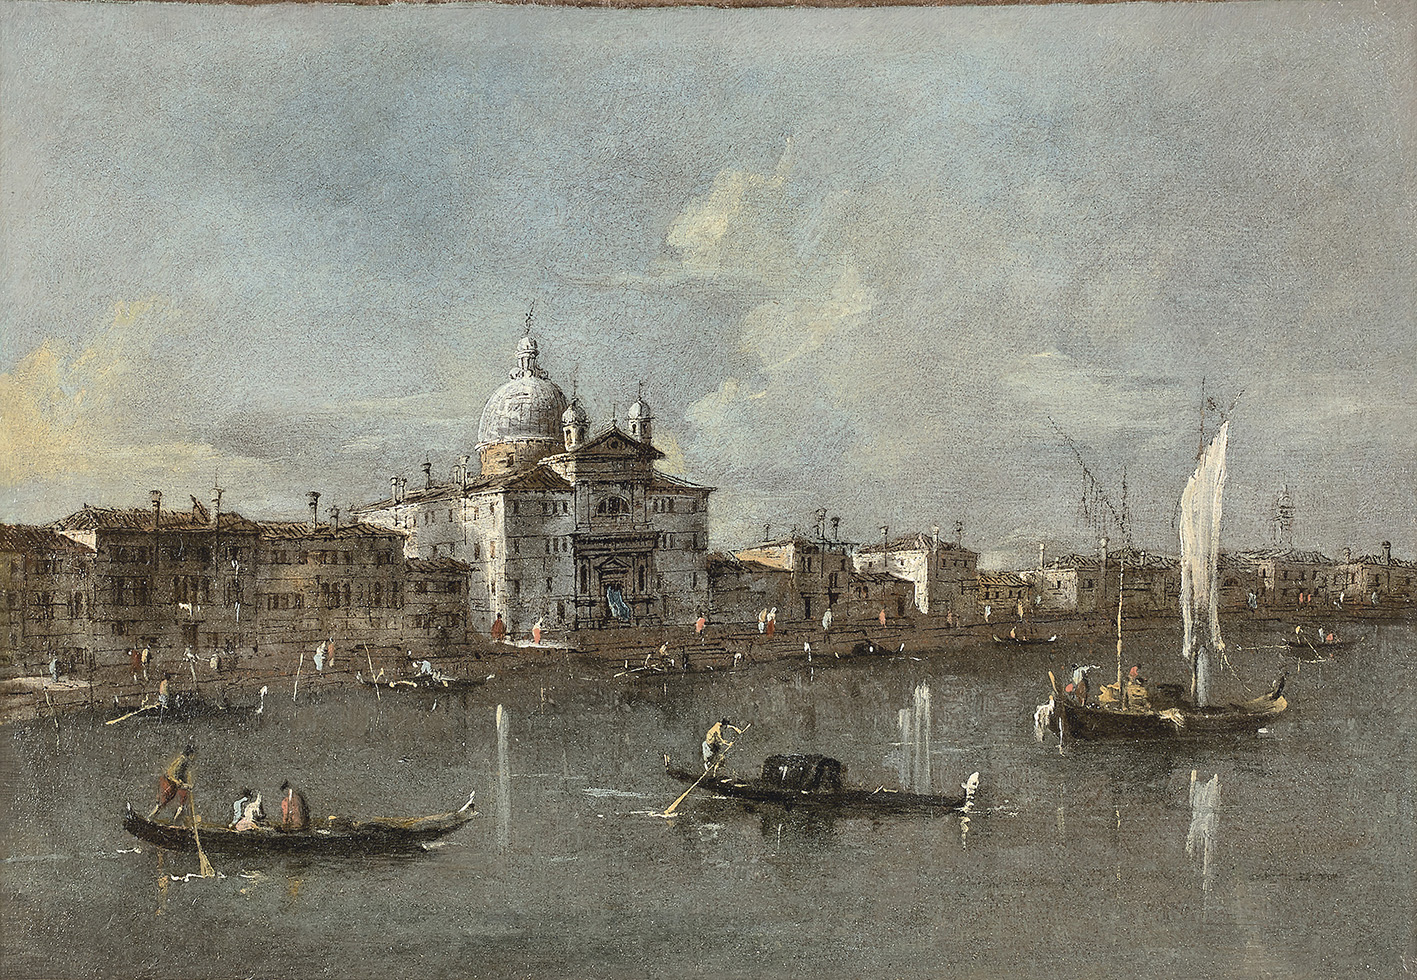 The Venice of Francesco Guardi